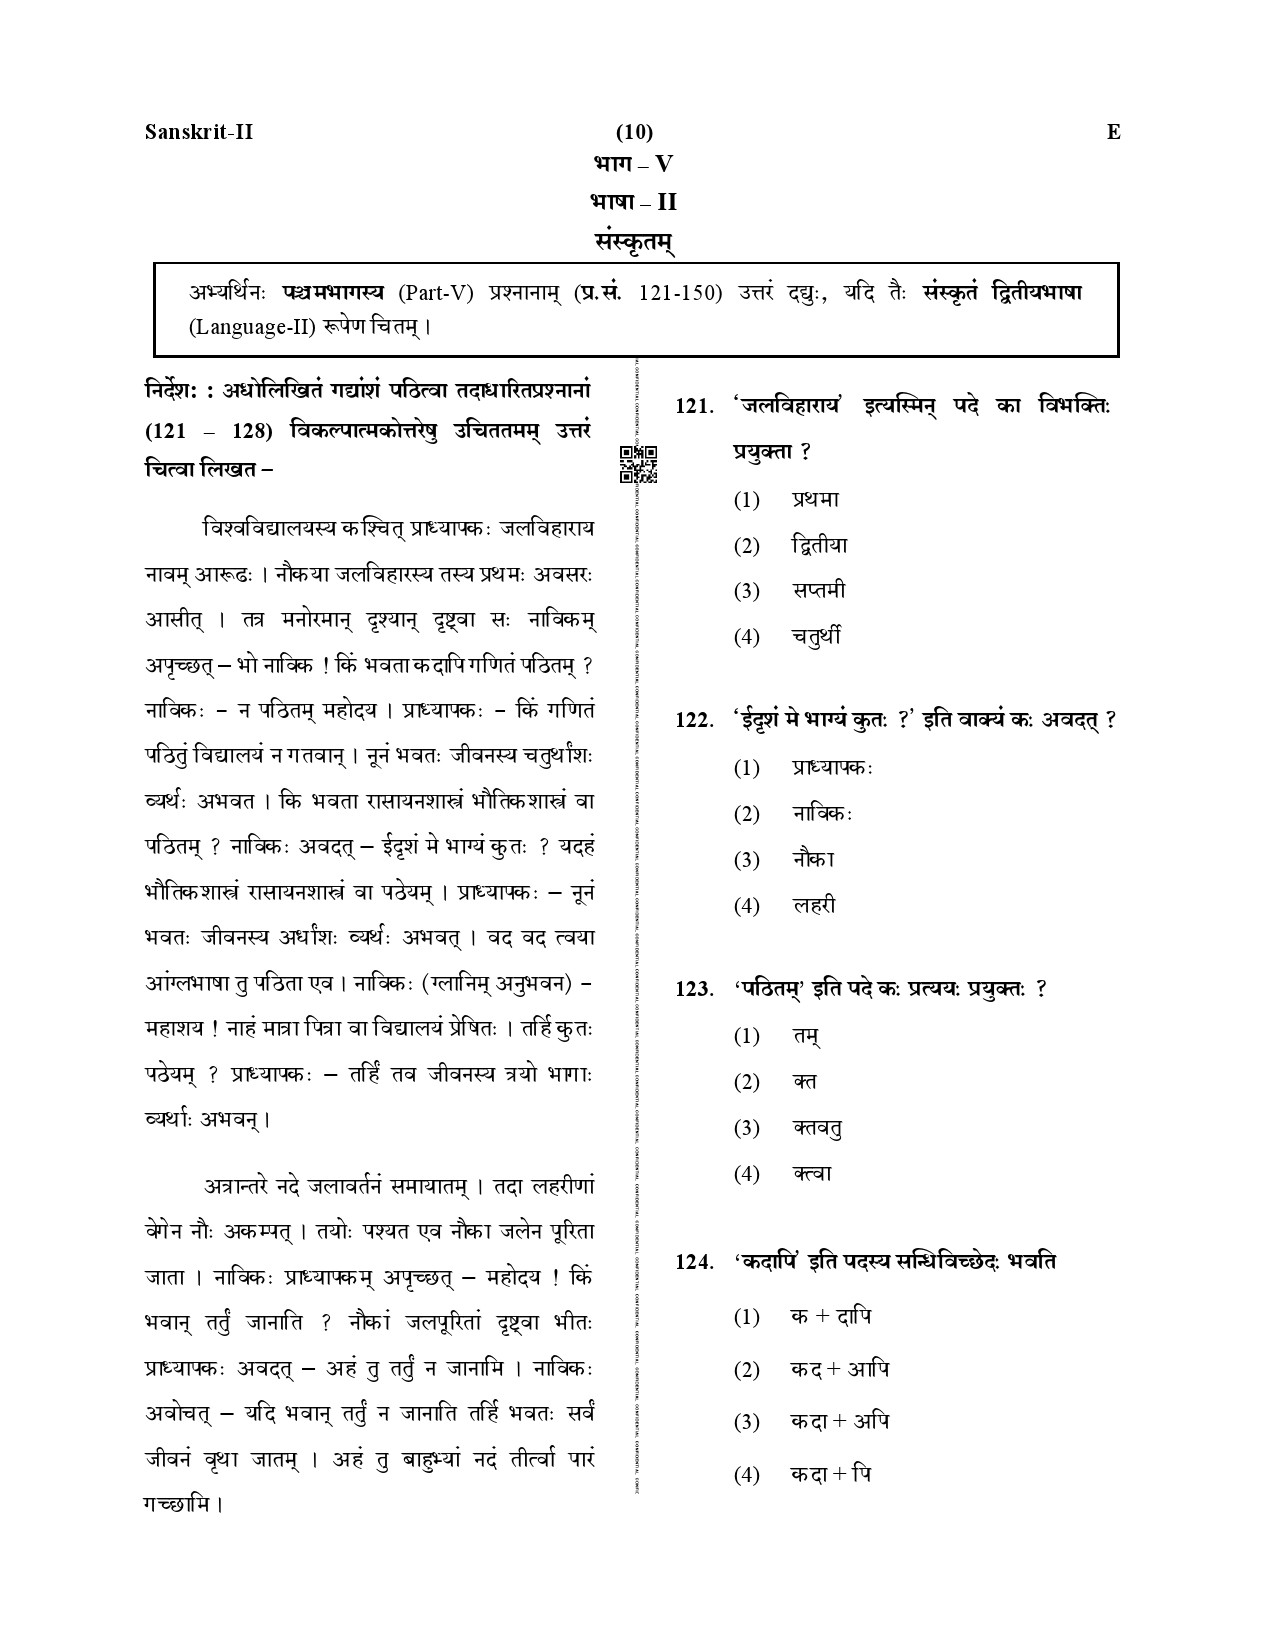 CTET December 2019 Paper 2 Part V Language II Sanskrit 1